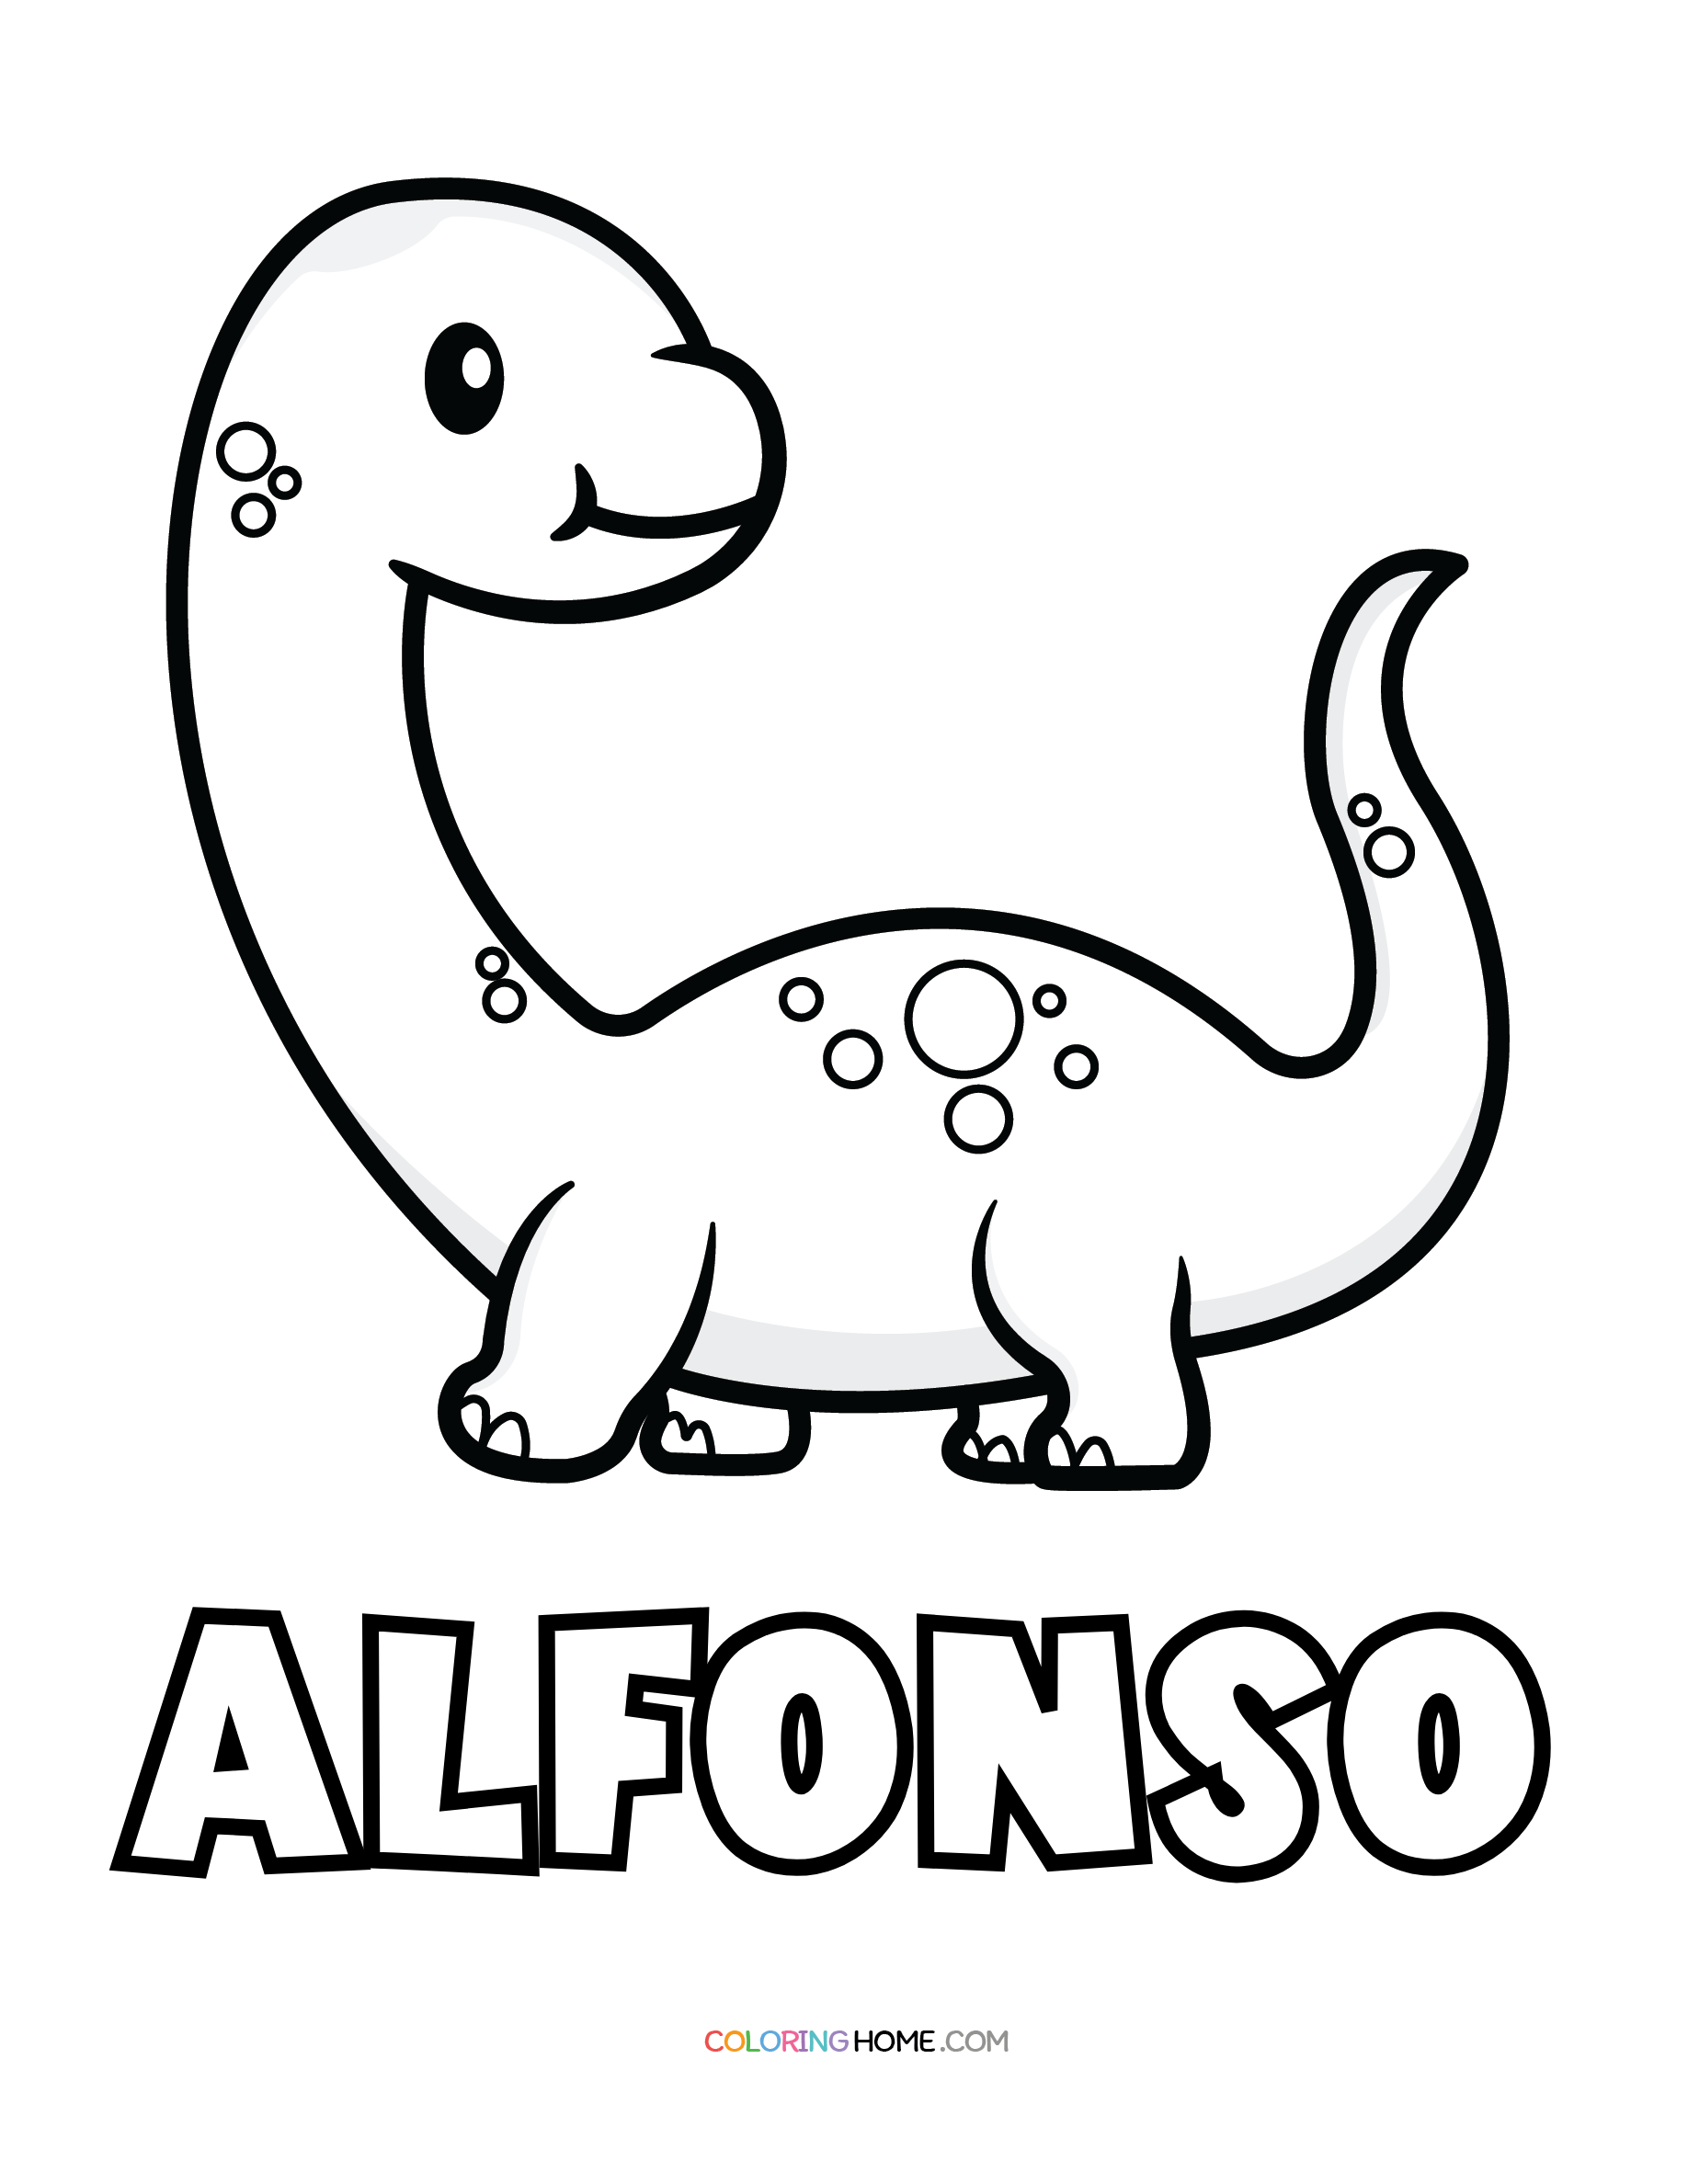 Alfonso dinosaur coloring page